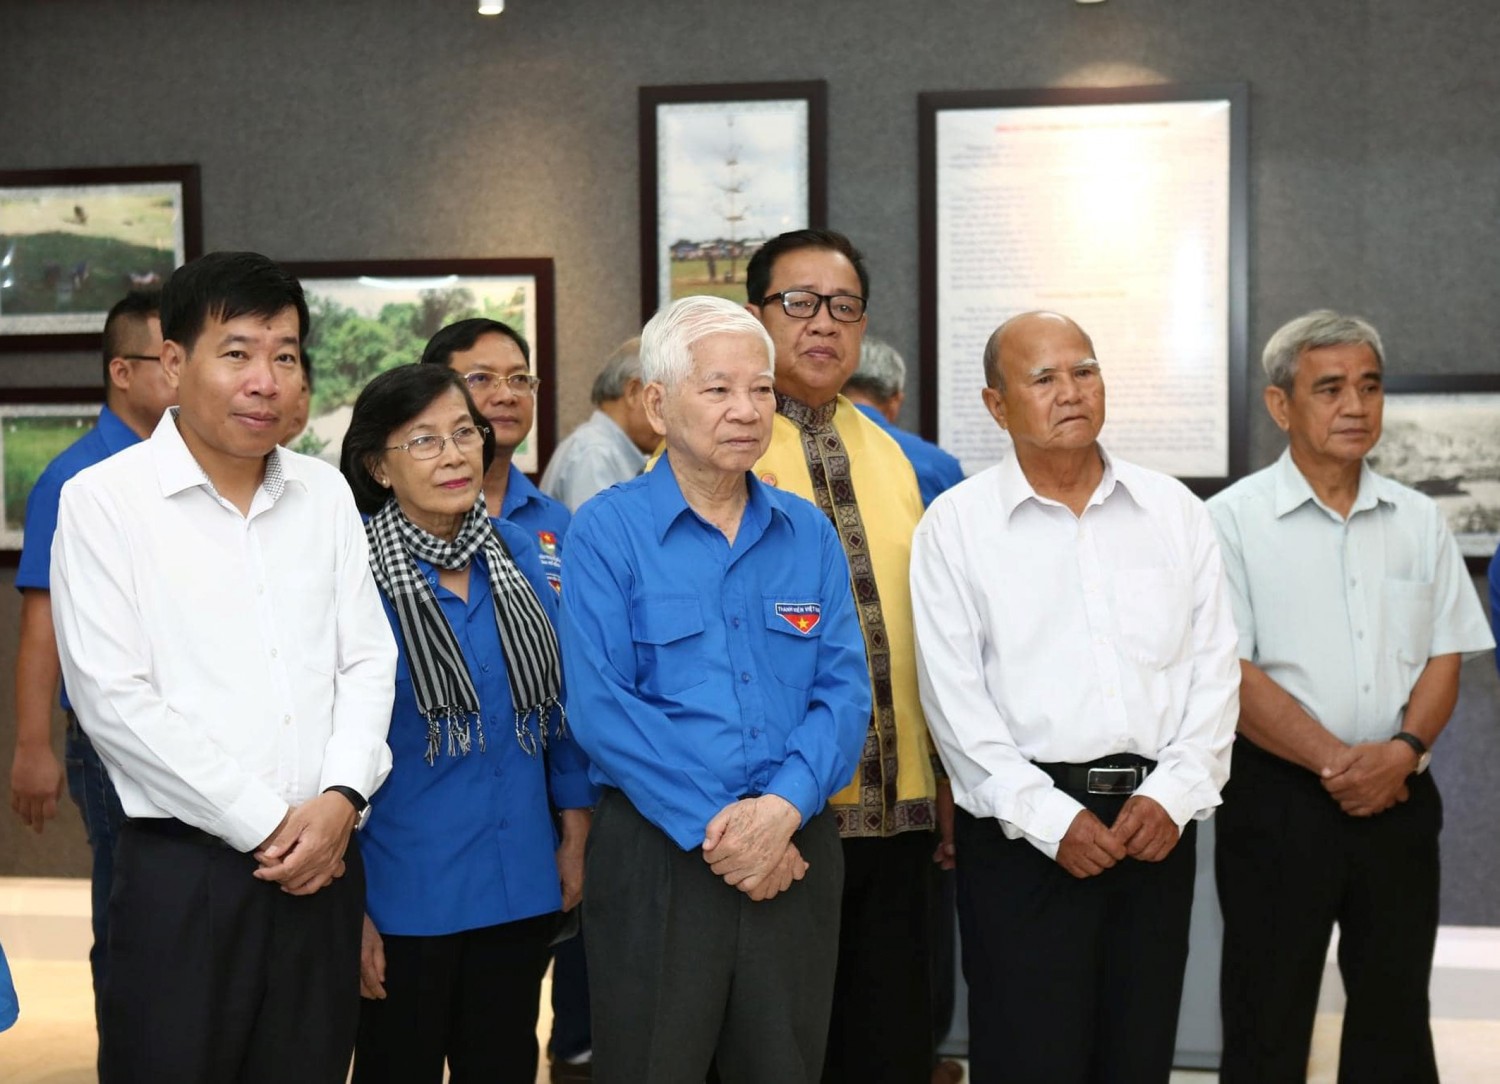 Họp mặt Kỷ niệm 93 năm Ngày thành lập Đoàn TNCS Hồ Chí Minh (26/03/1931 - 26/03/2024), Liên hoan gặp gỡ các thế hệ cán bộ Đoàn Sông Bé - Bình Dương - Bình Phước lần thứ VIII - Năm 2024